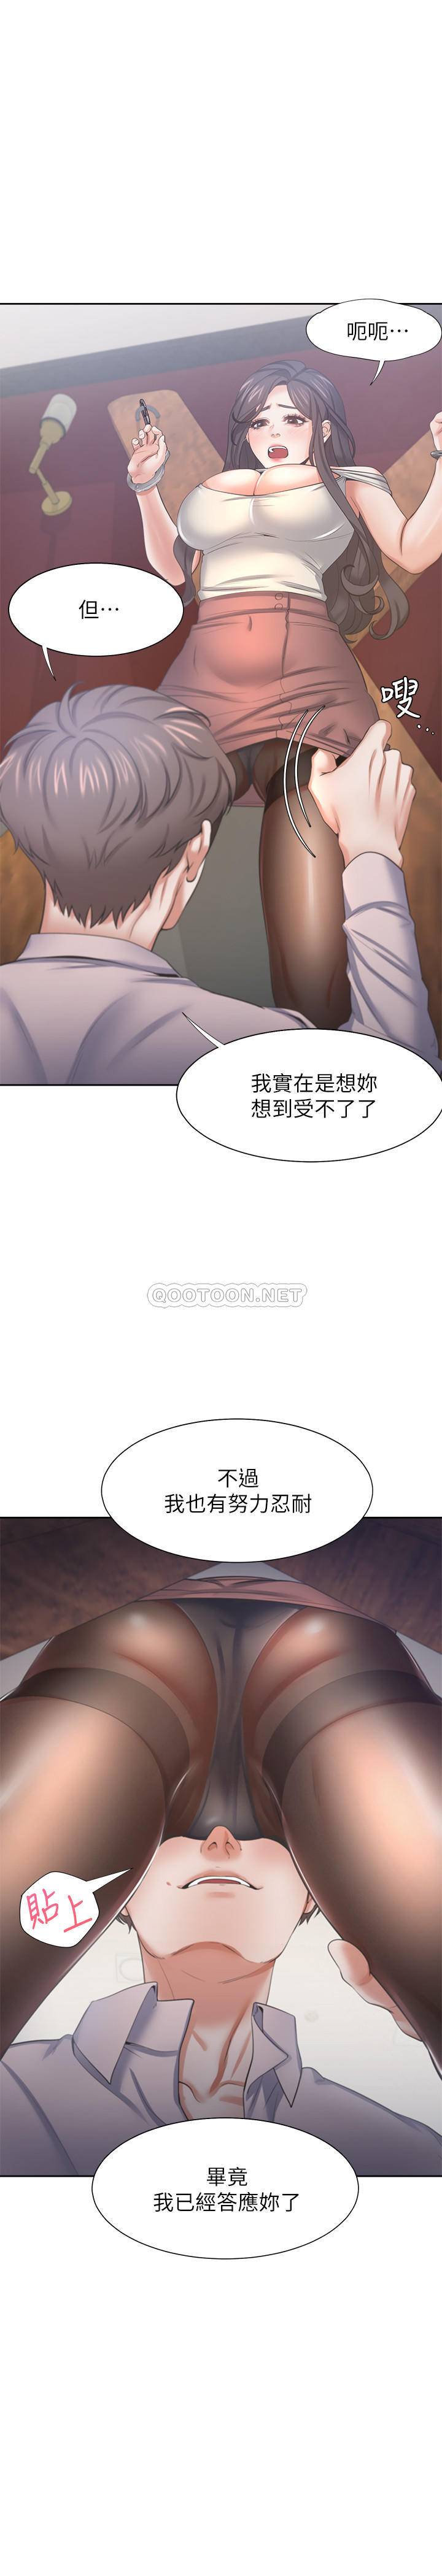 韩国污漫画 愛火難耐 第42话-被情趣用品吓到的芝熙 13